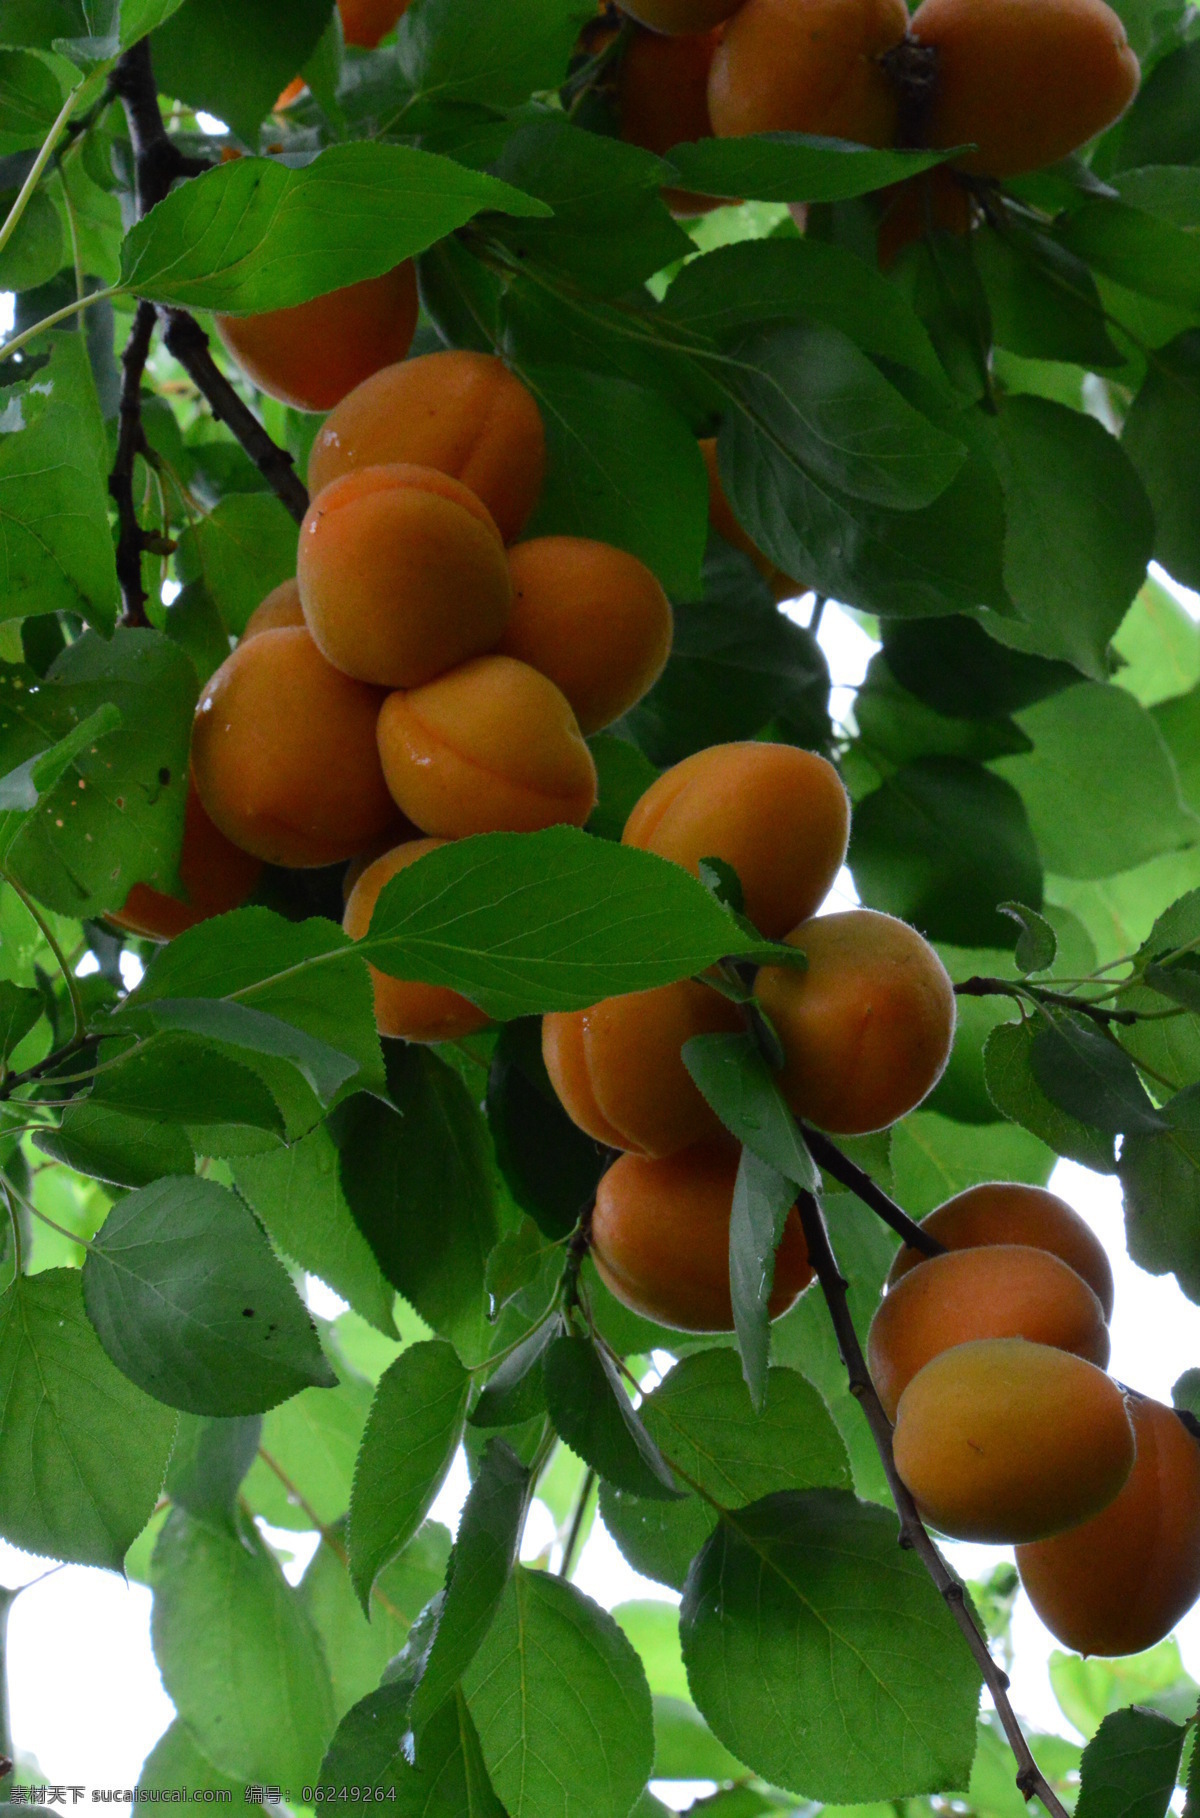 甜杏 大黄杏 果实 植物 水果 成熟 绿叶 红色 枝叶 园林景观 绿化景观 果品果实 杏树杏花 生物世界